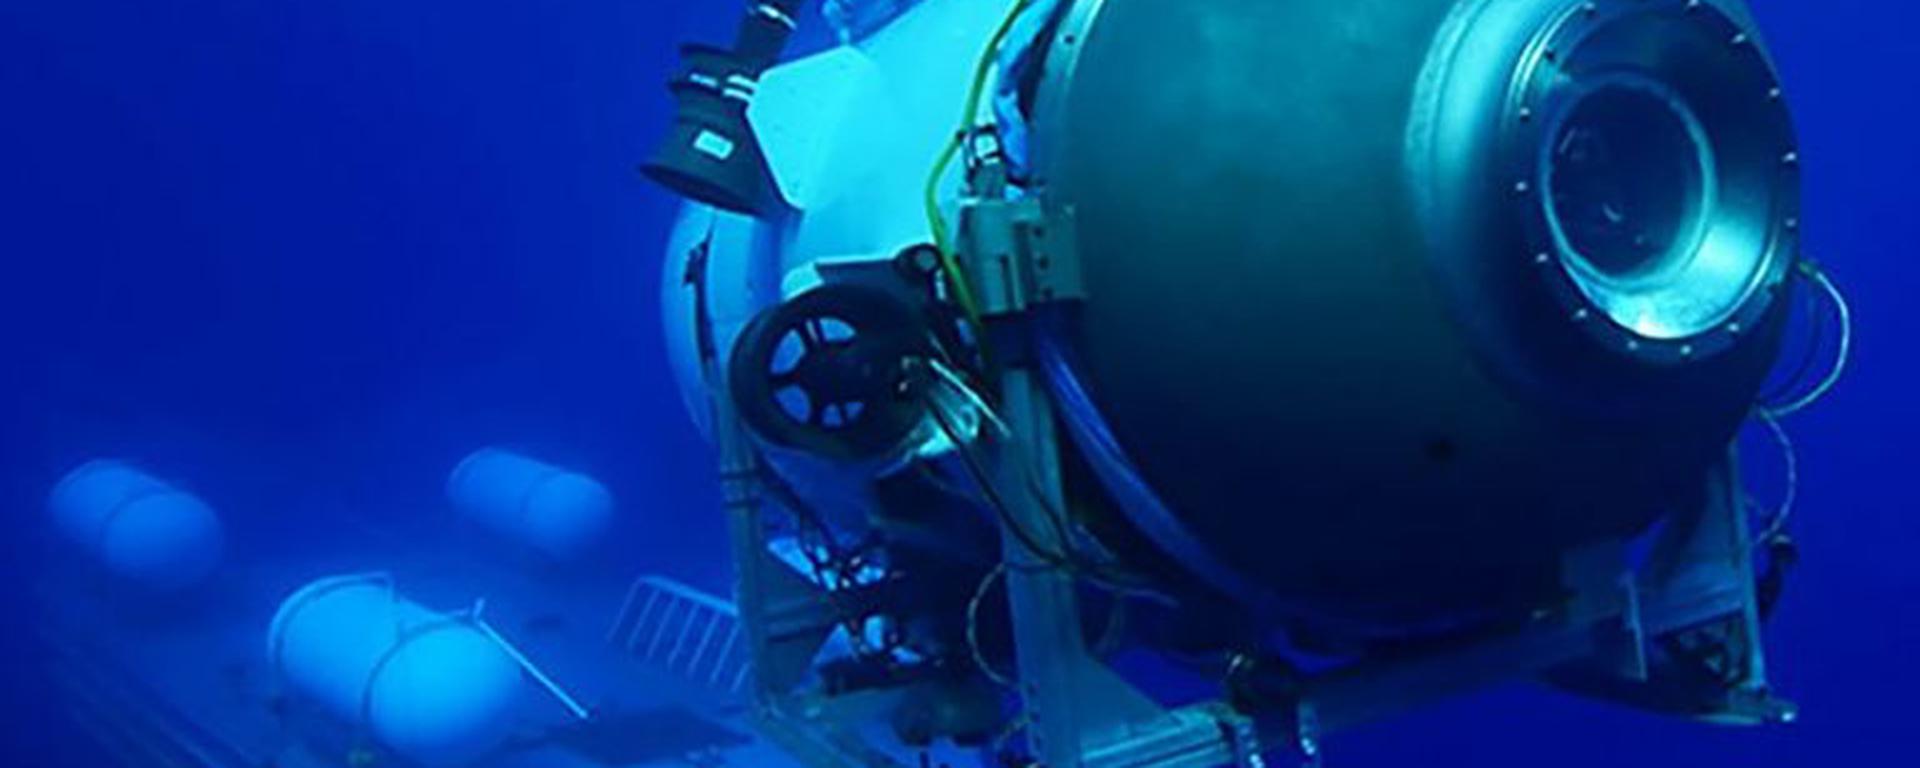 Titán: qué pudo causar la “implosión catastrófica” y otras dudas sobre el fatal destino del submarino